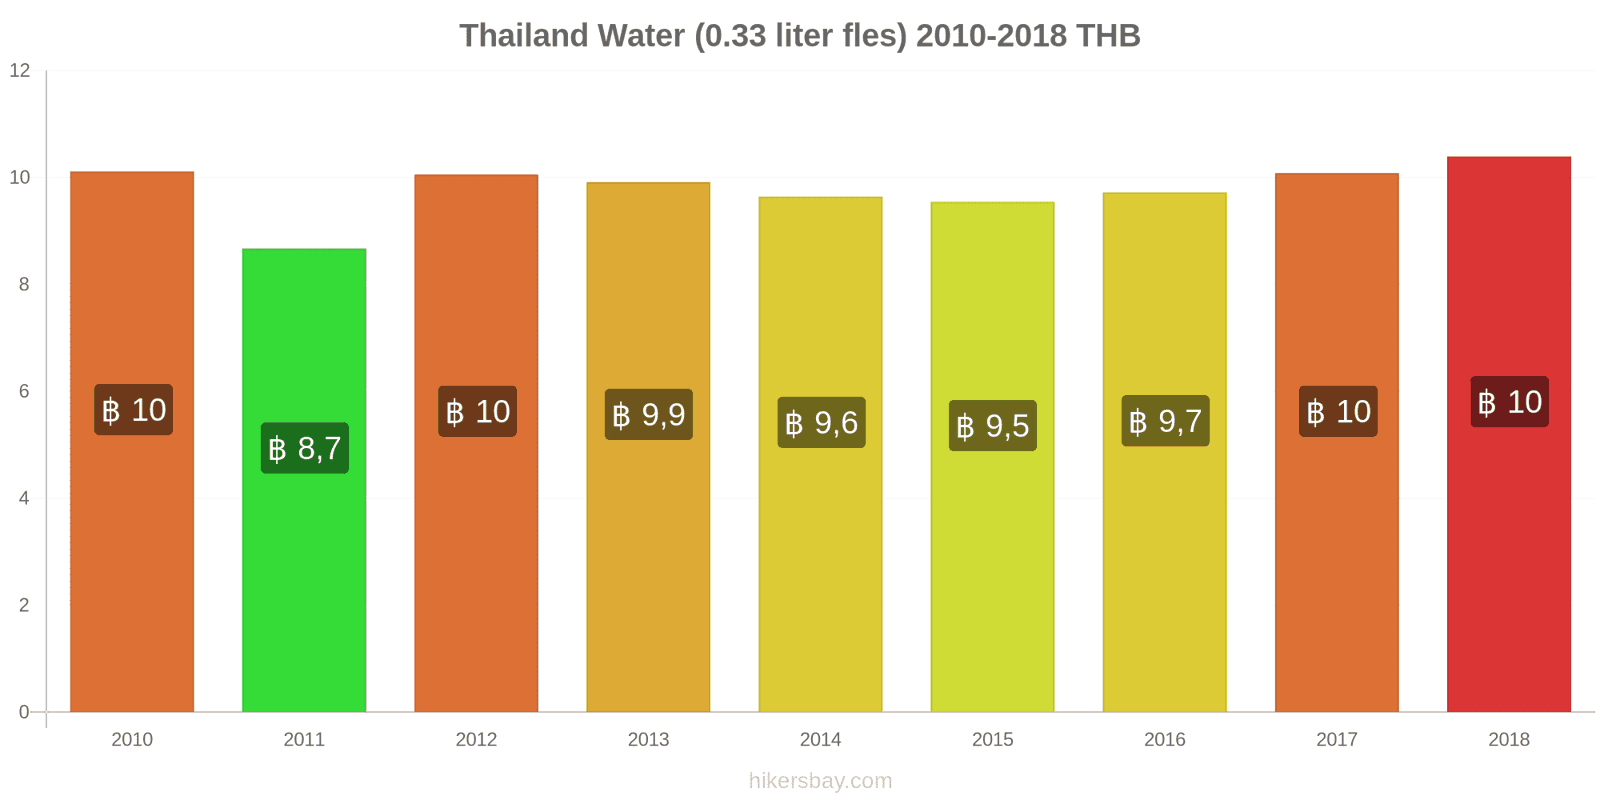 Thailand prijswijzigingen Water (0.33 liter fles) hikersbay.com